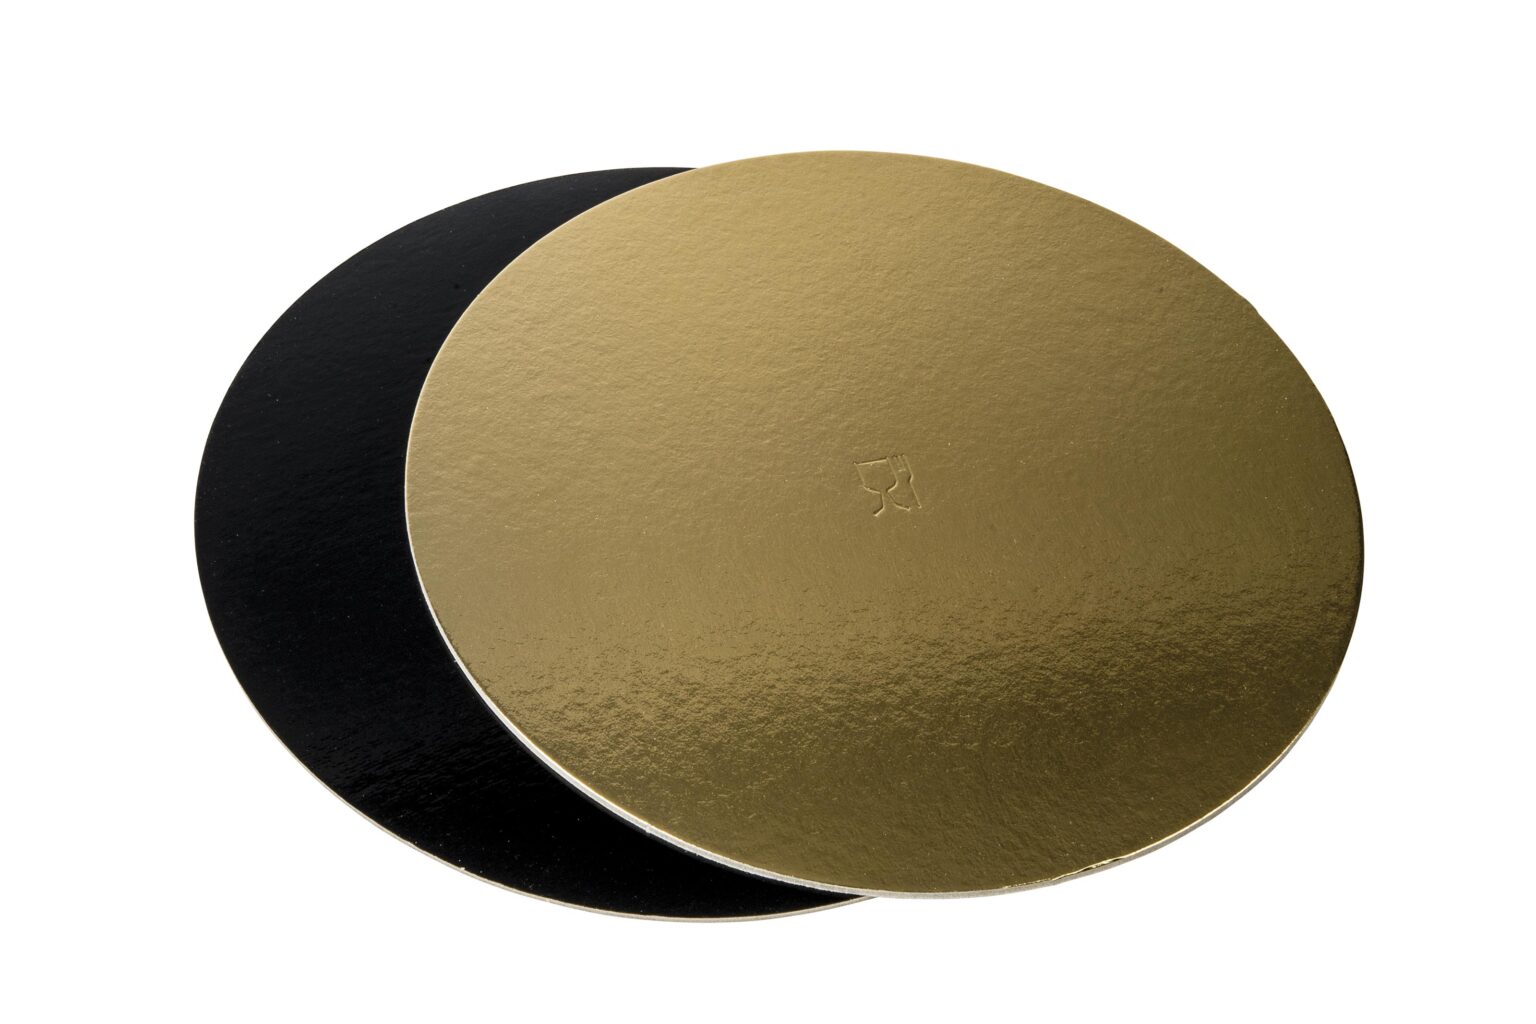 Poza Discuri groase auriu/negru - Discuri groase auriu/negru 2400 gr OE28cm - 10 buc/set